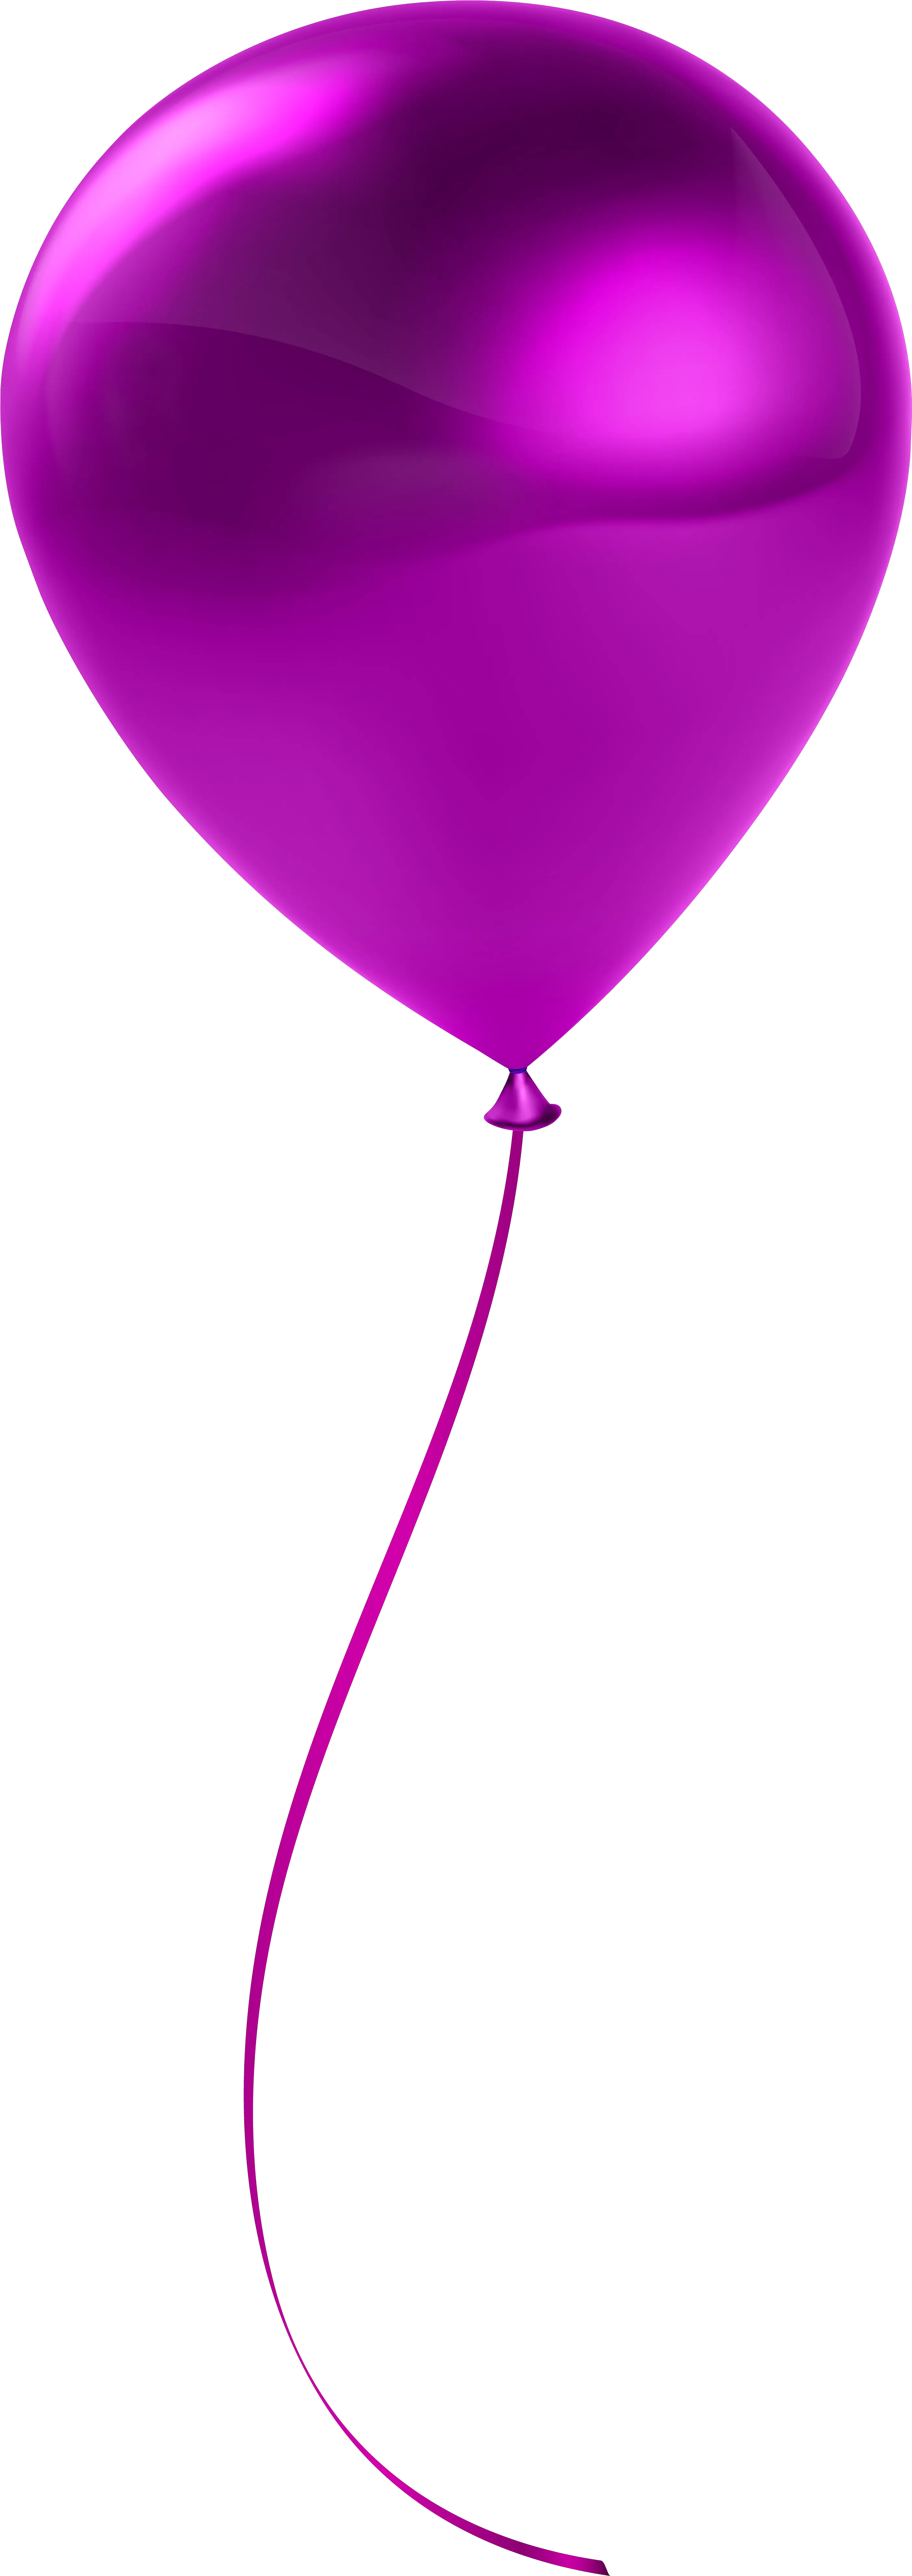 Ballon Clipart Single Balloon Transparent Background Single Balloon Png Ballon Png